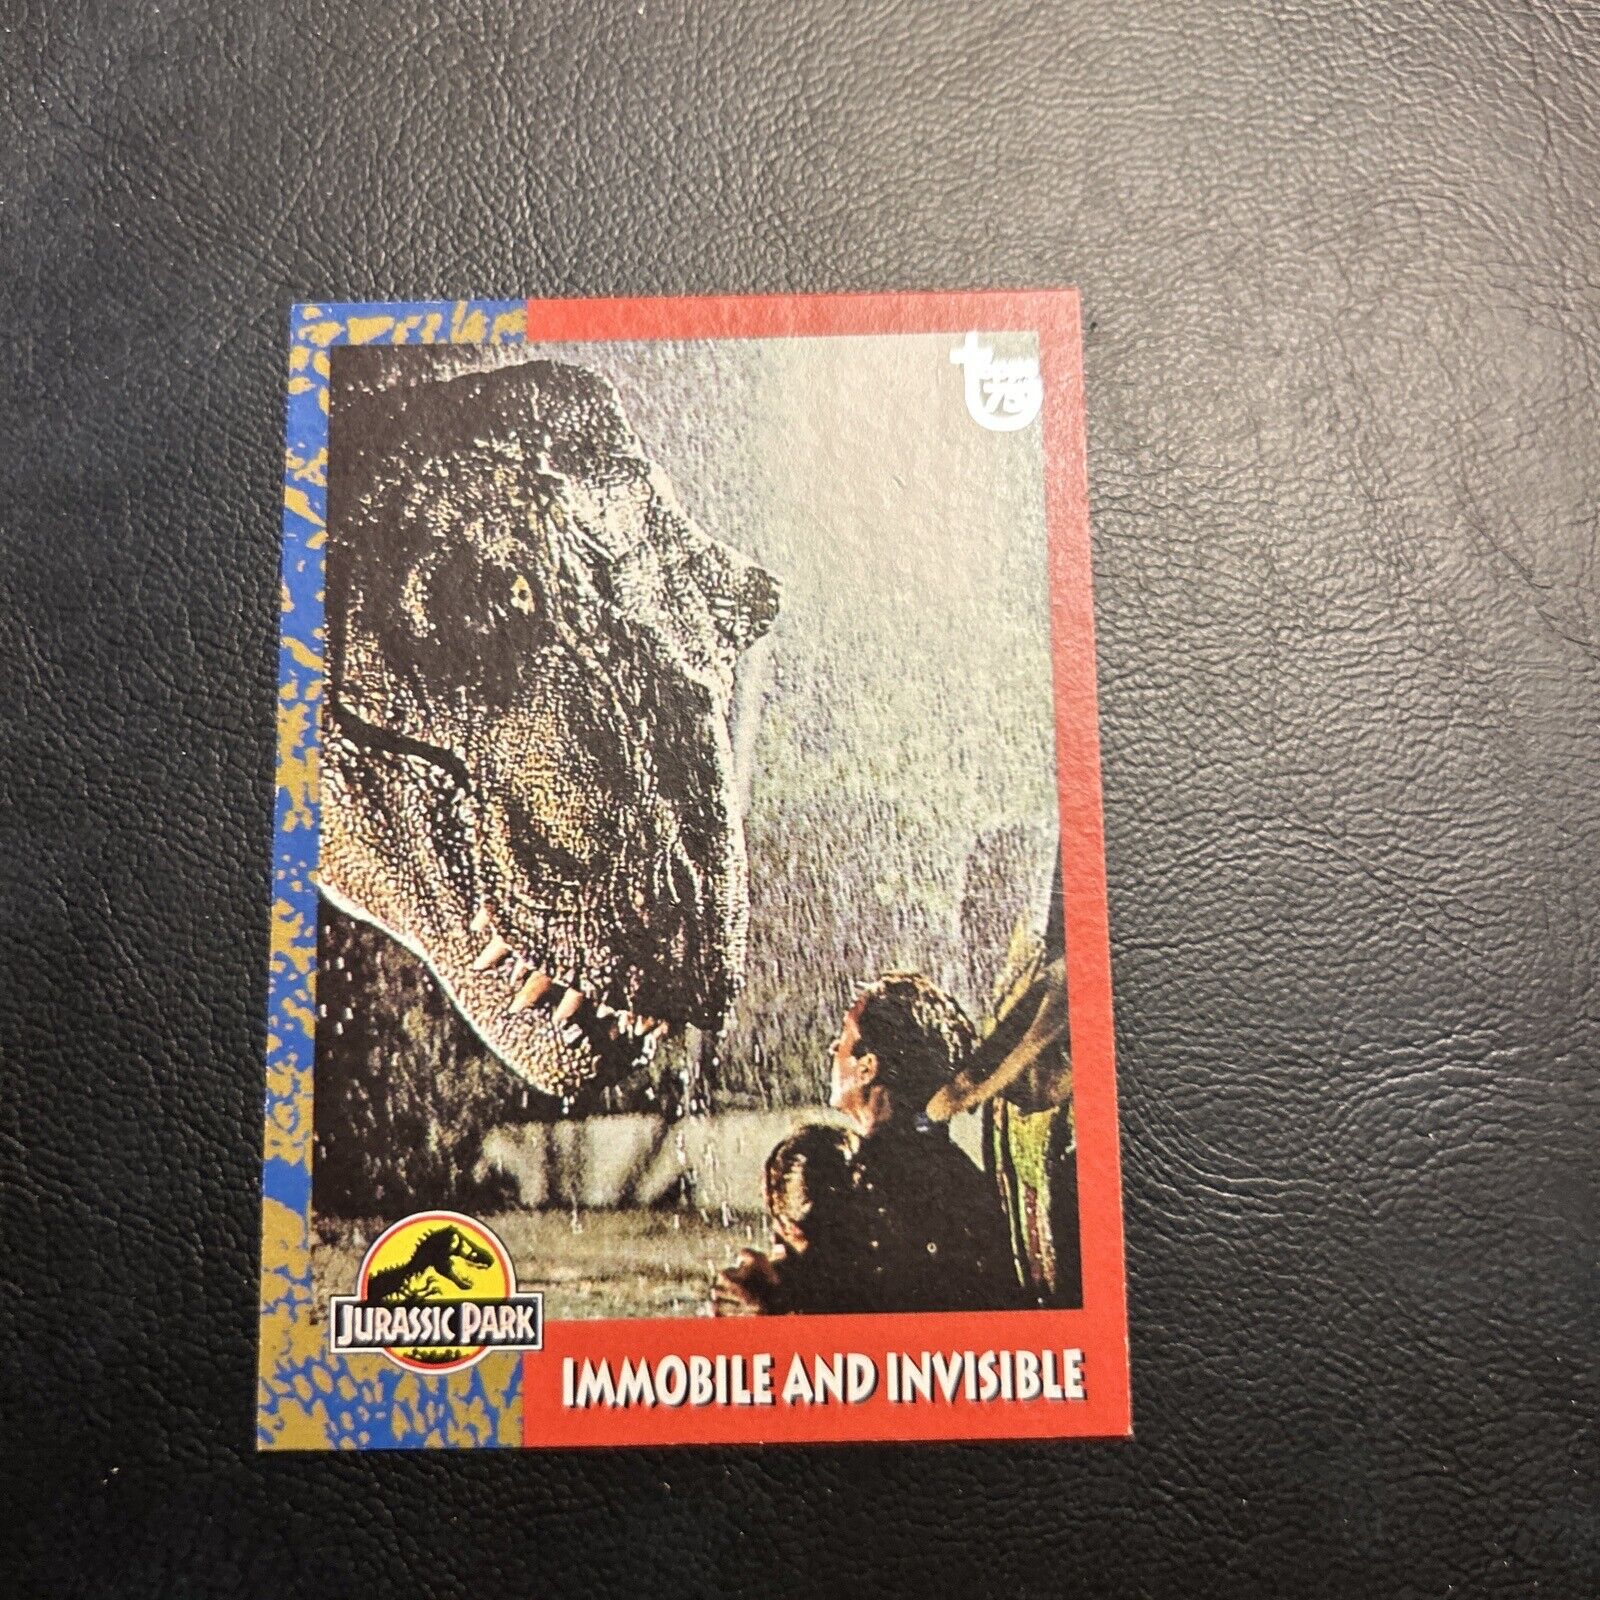 Jb9a Topps 75Th Anniversary 2013 #99 Jurassic Park T-Rex 1993